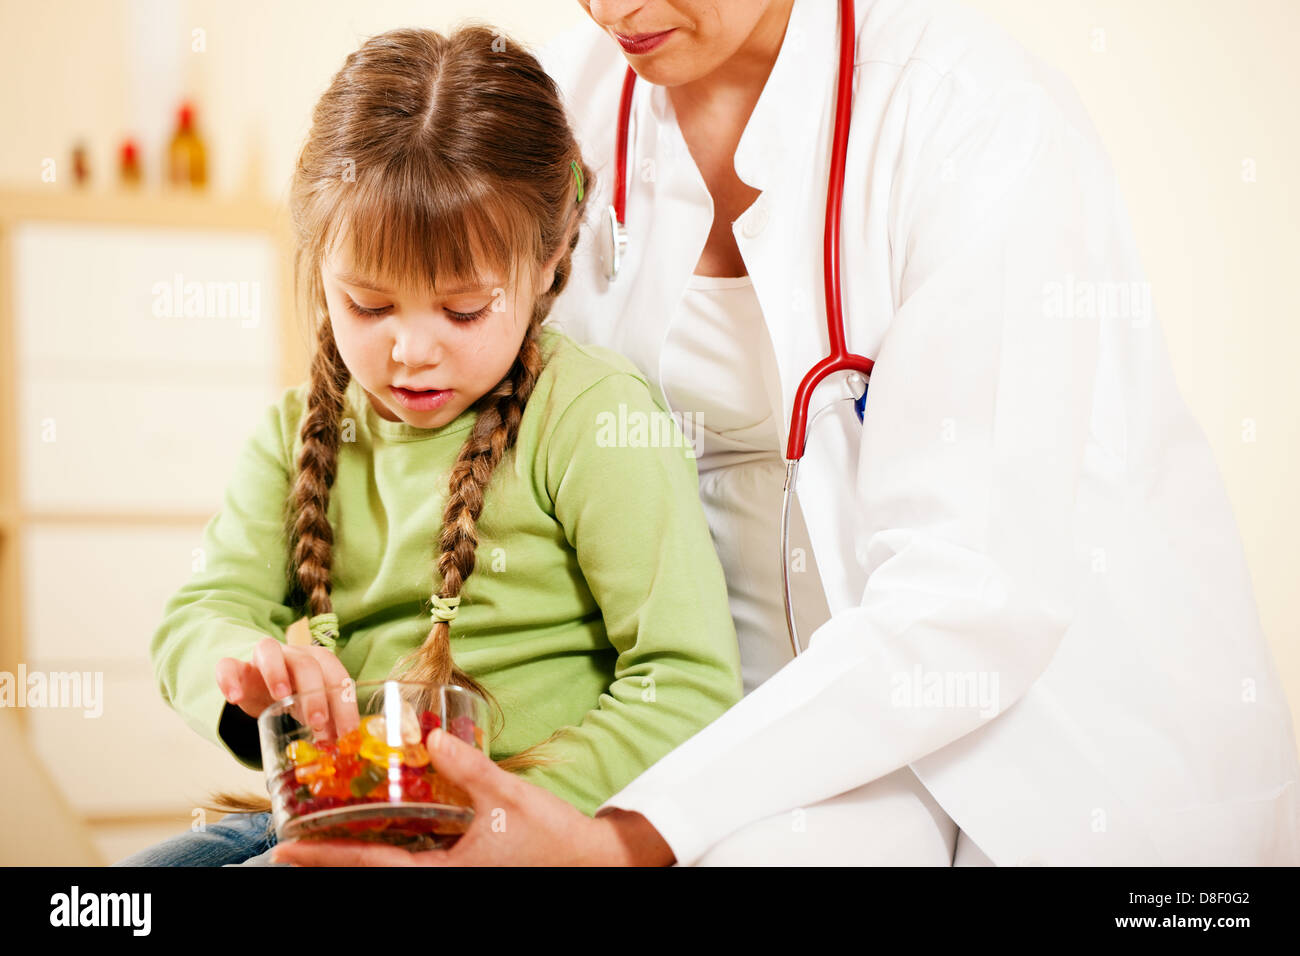 Femme médecin pédiatre donnant de bonbons (gomme ours) à peu patient après le traitement Banque D'Images